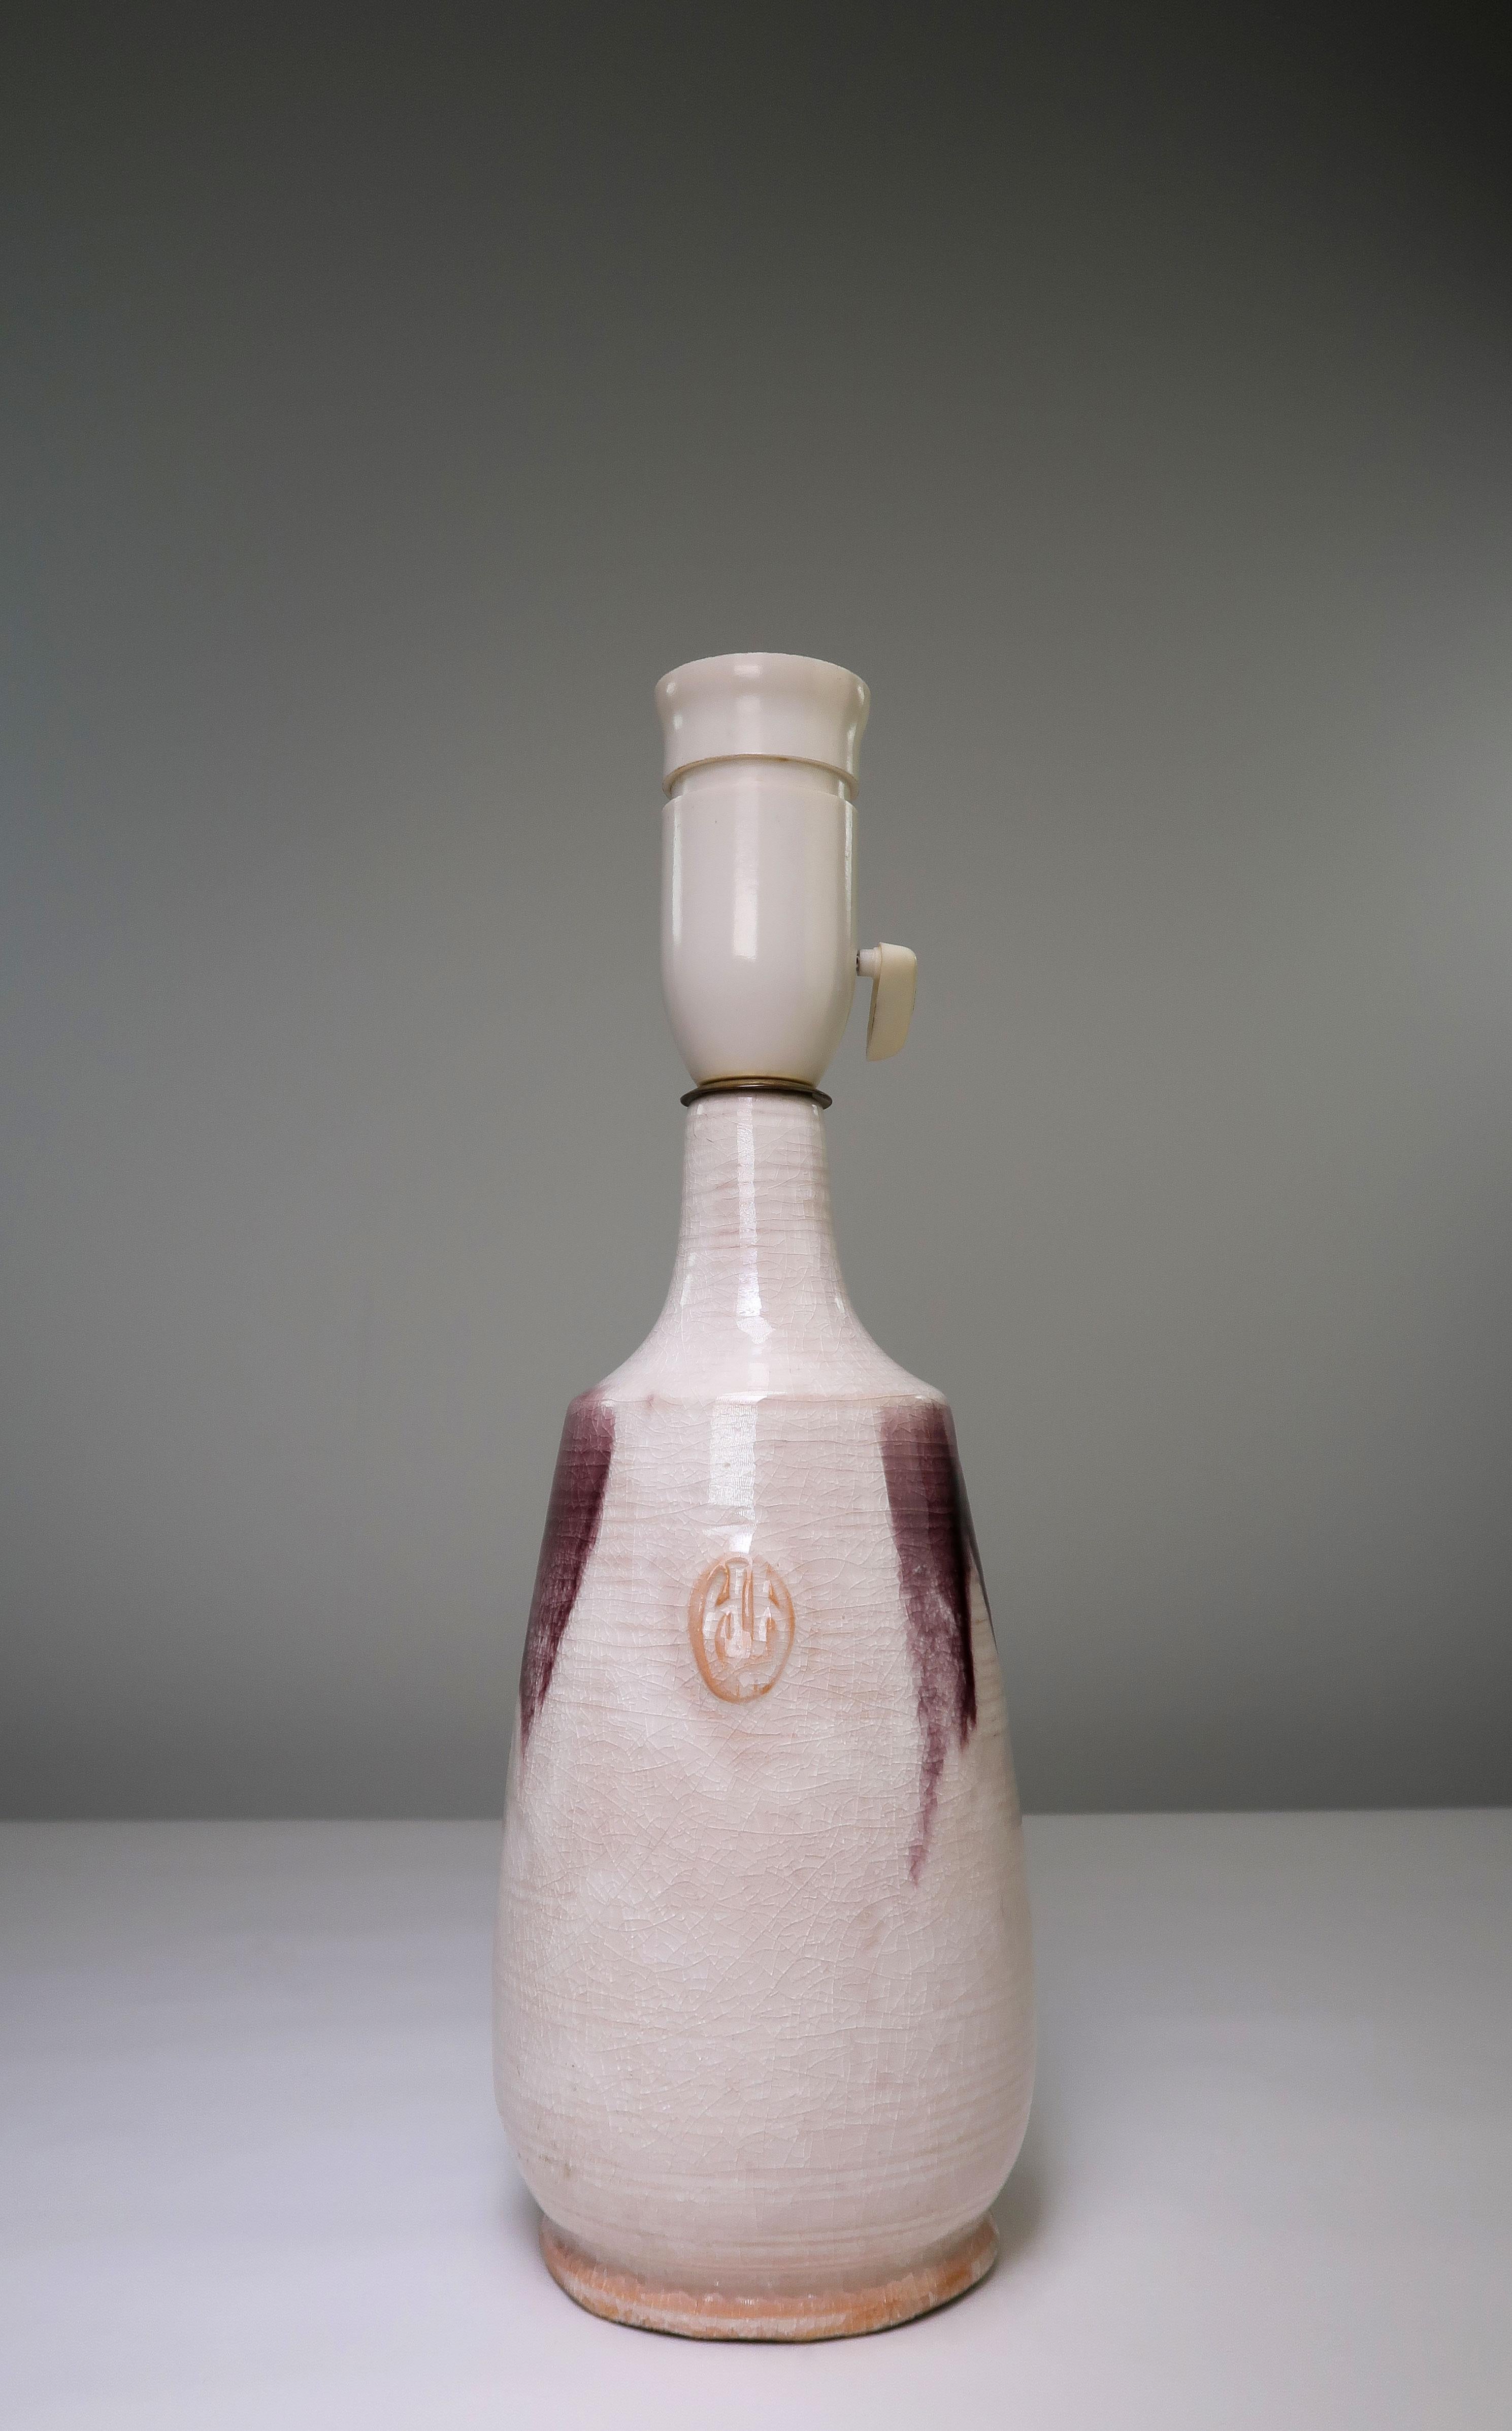 Dänische Mid-Century Modern handgefertigte und handdekorierte warmweiße Craquelé glasierte Keramik Tischlampe mit tropfender dunkelvioletter Glasur um den Hals und den Bauch der Lampe. Hergestellt von der dänischen Holstein Keramik in den 1960er